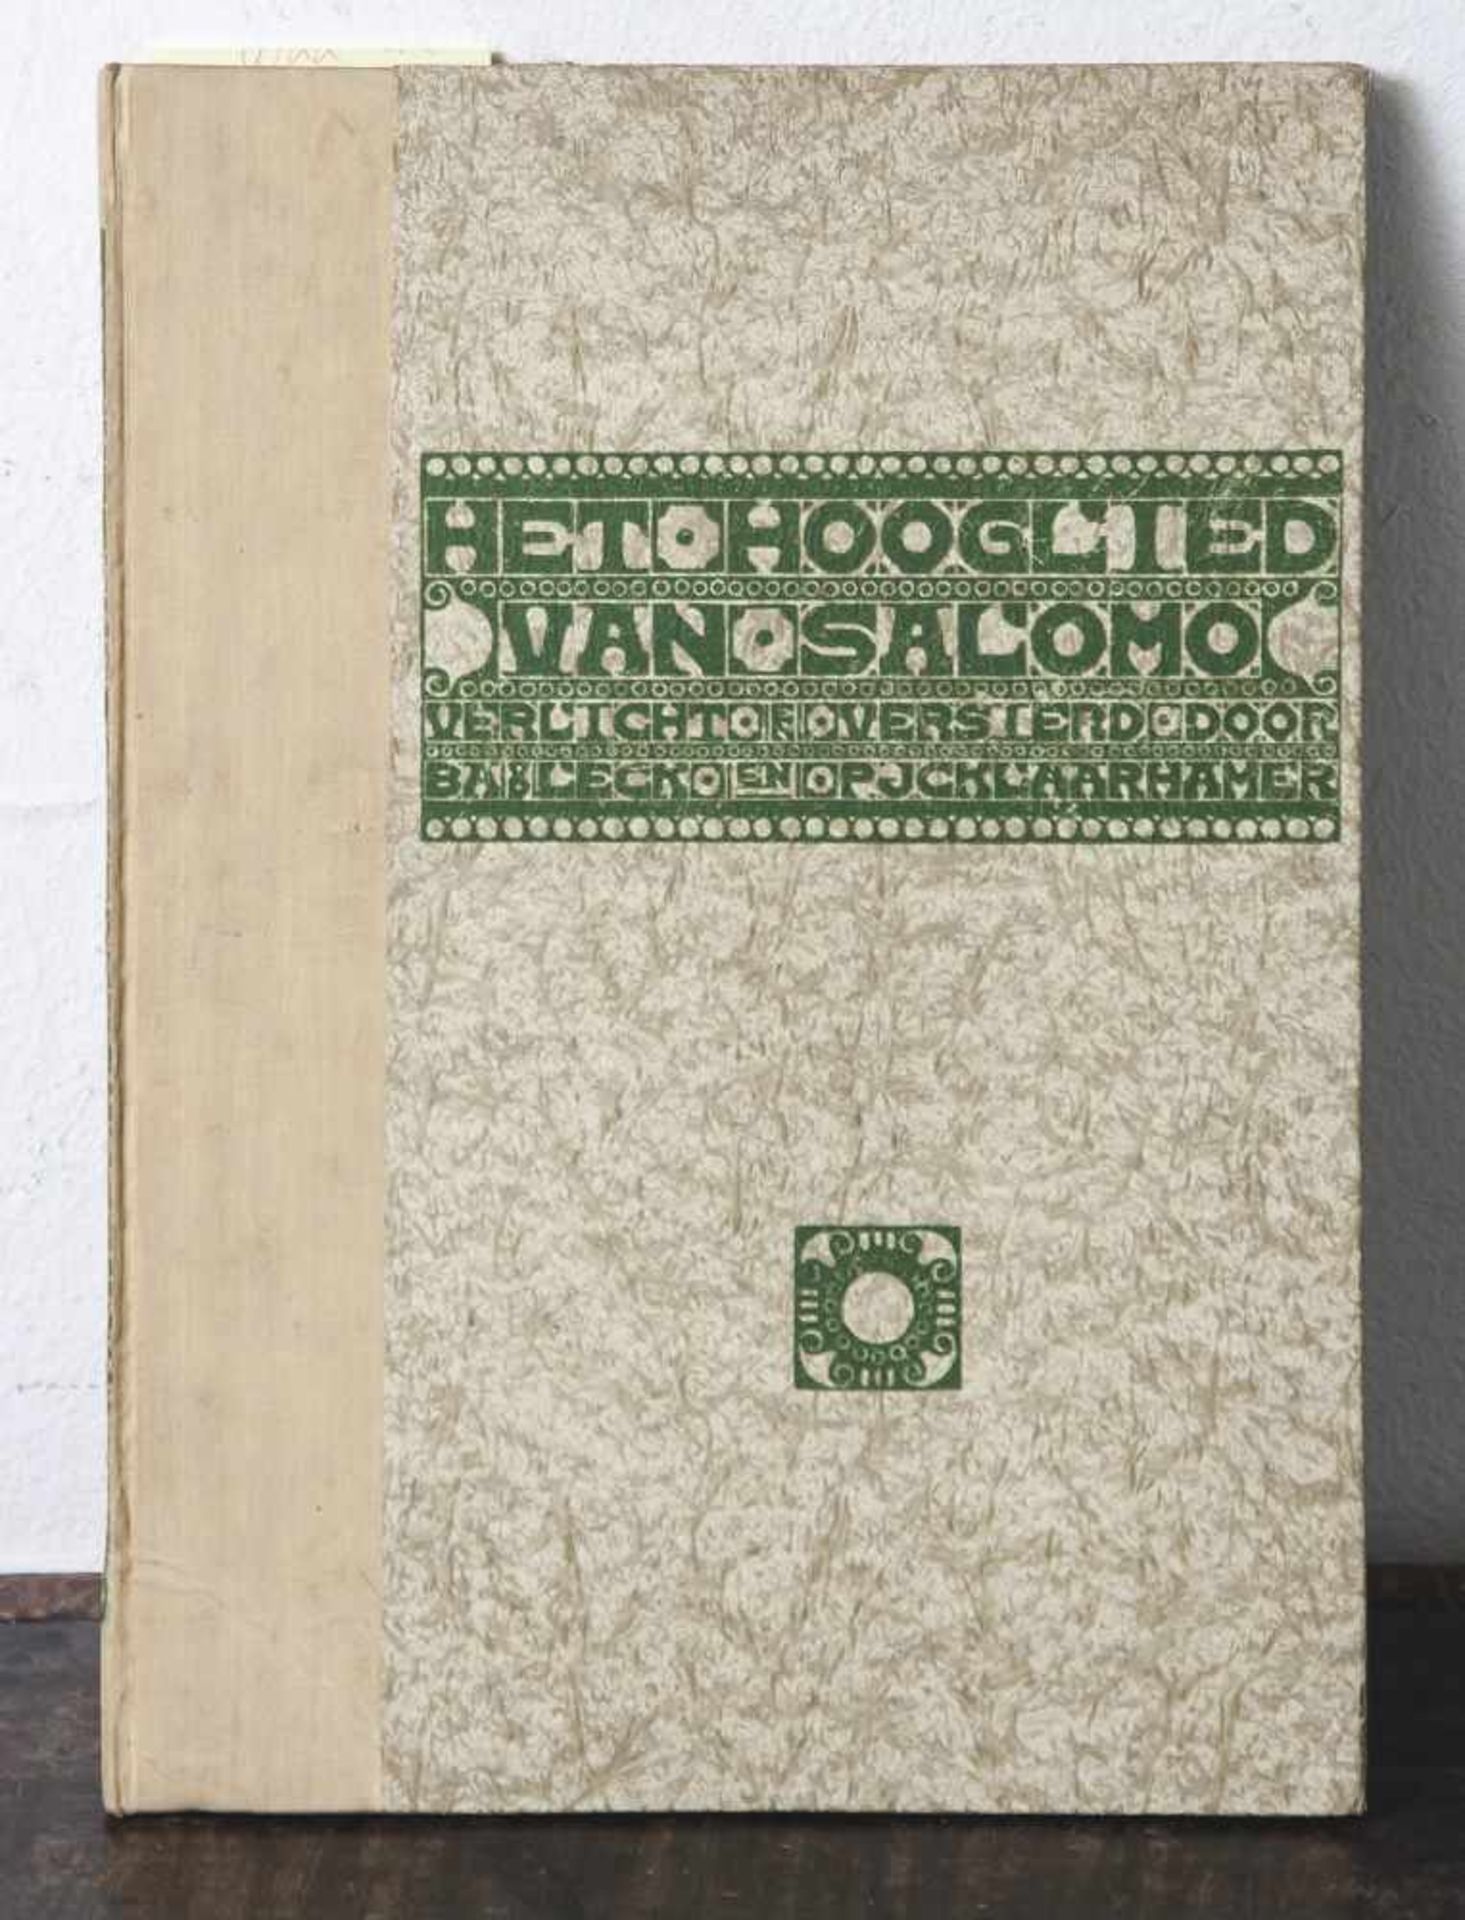 Leck, Bart van der und Klaarhamer, Piet: "Het Hooglied van Salomo", Amsterdam 1905, gedruckt in